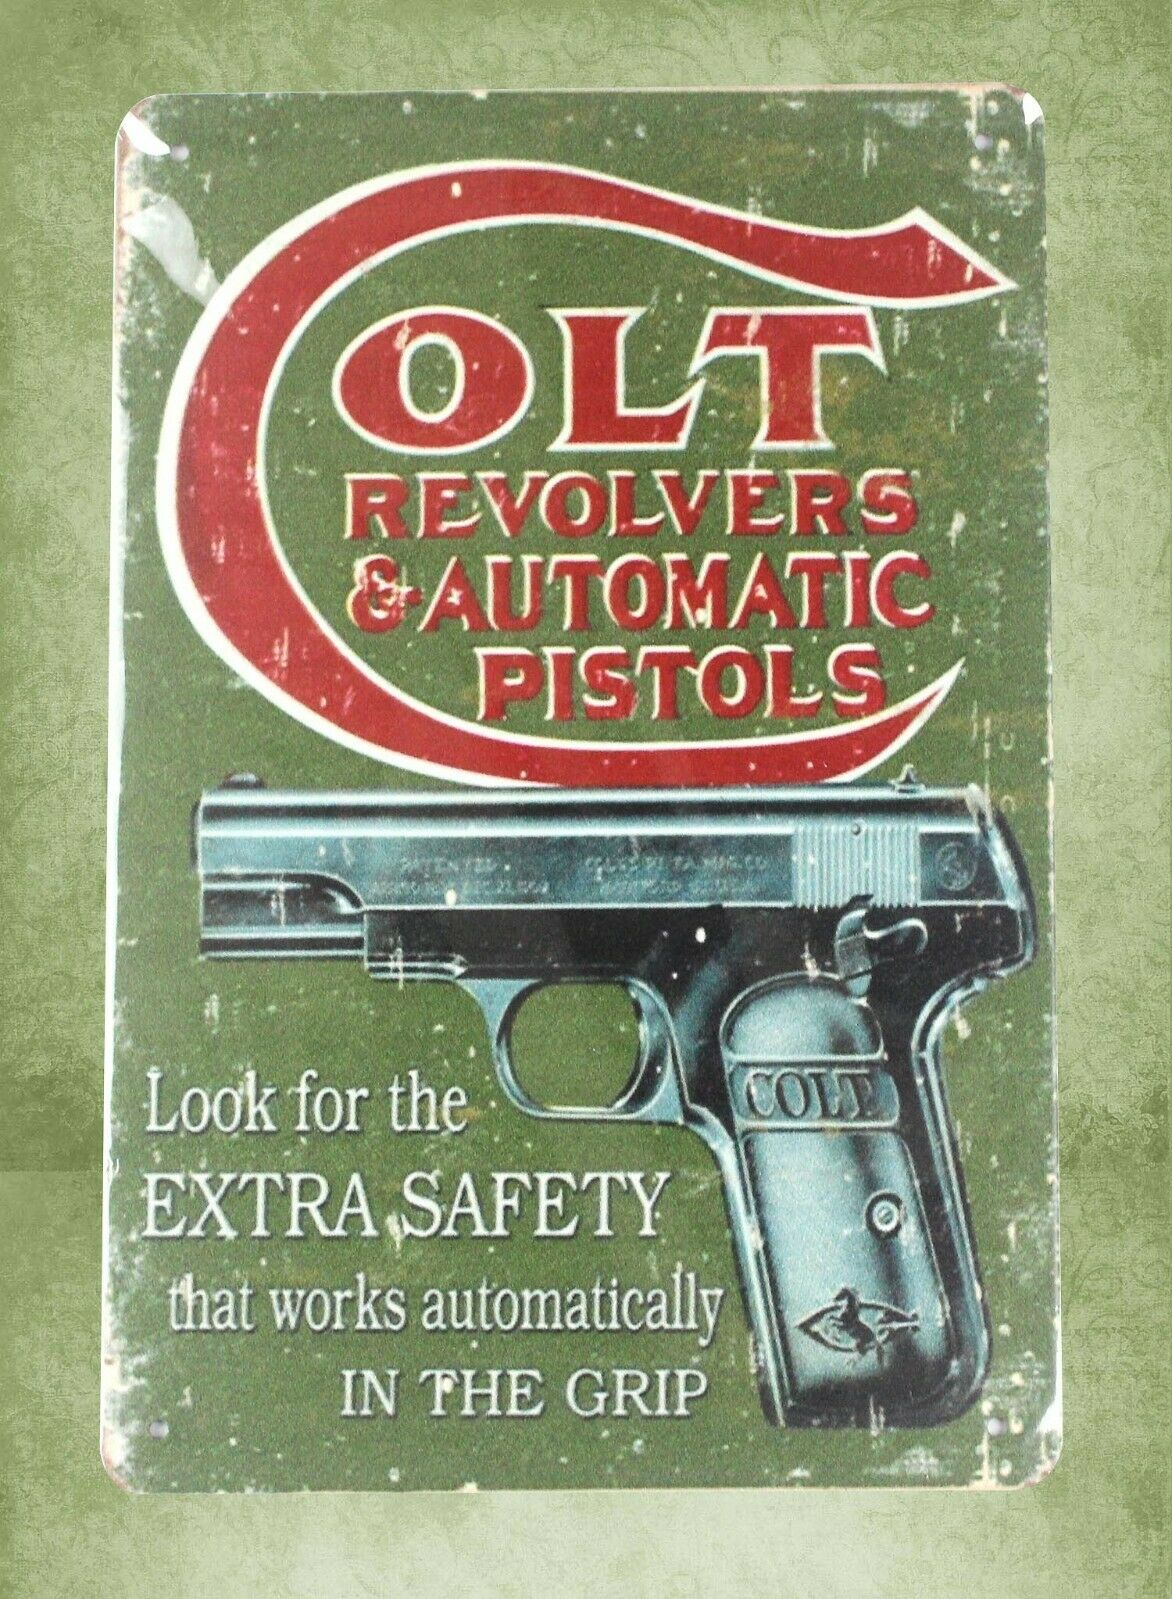 .Colt Pistols antique-style metal sign